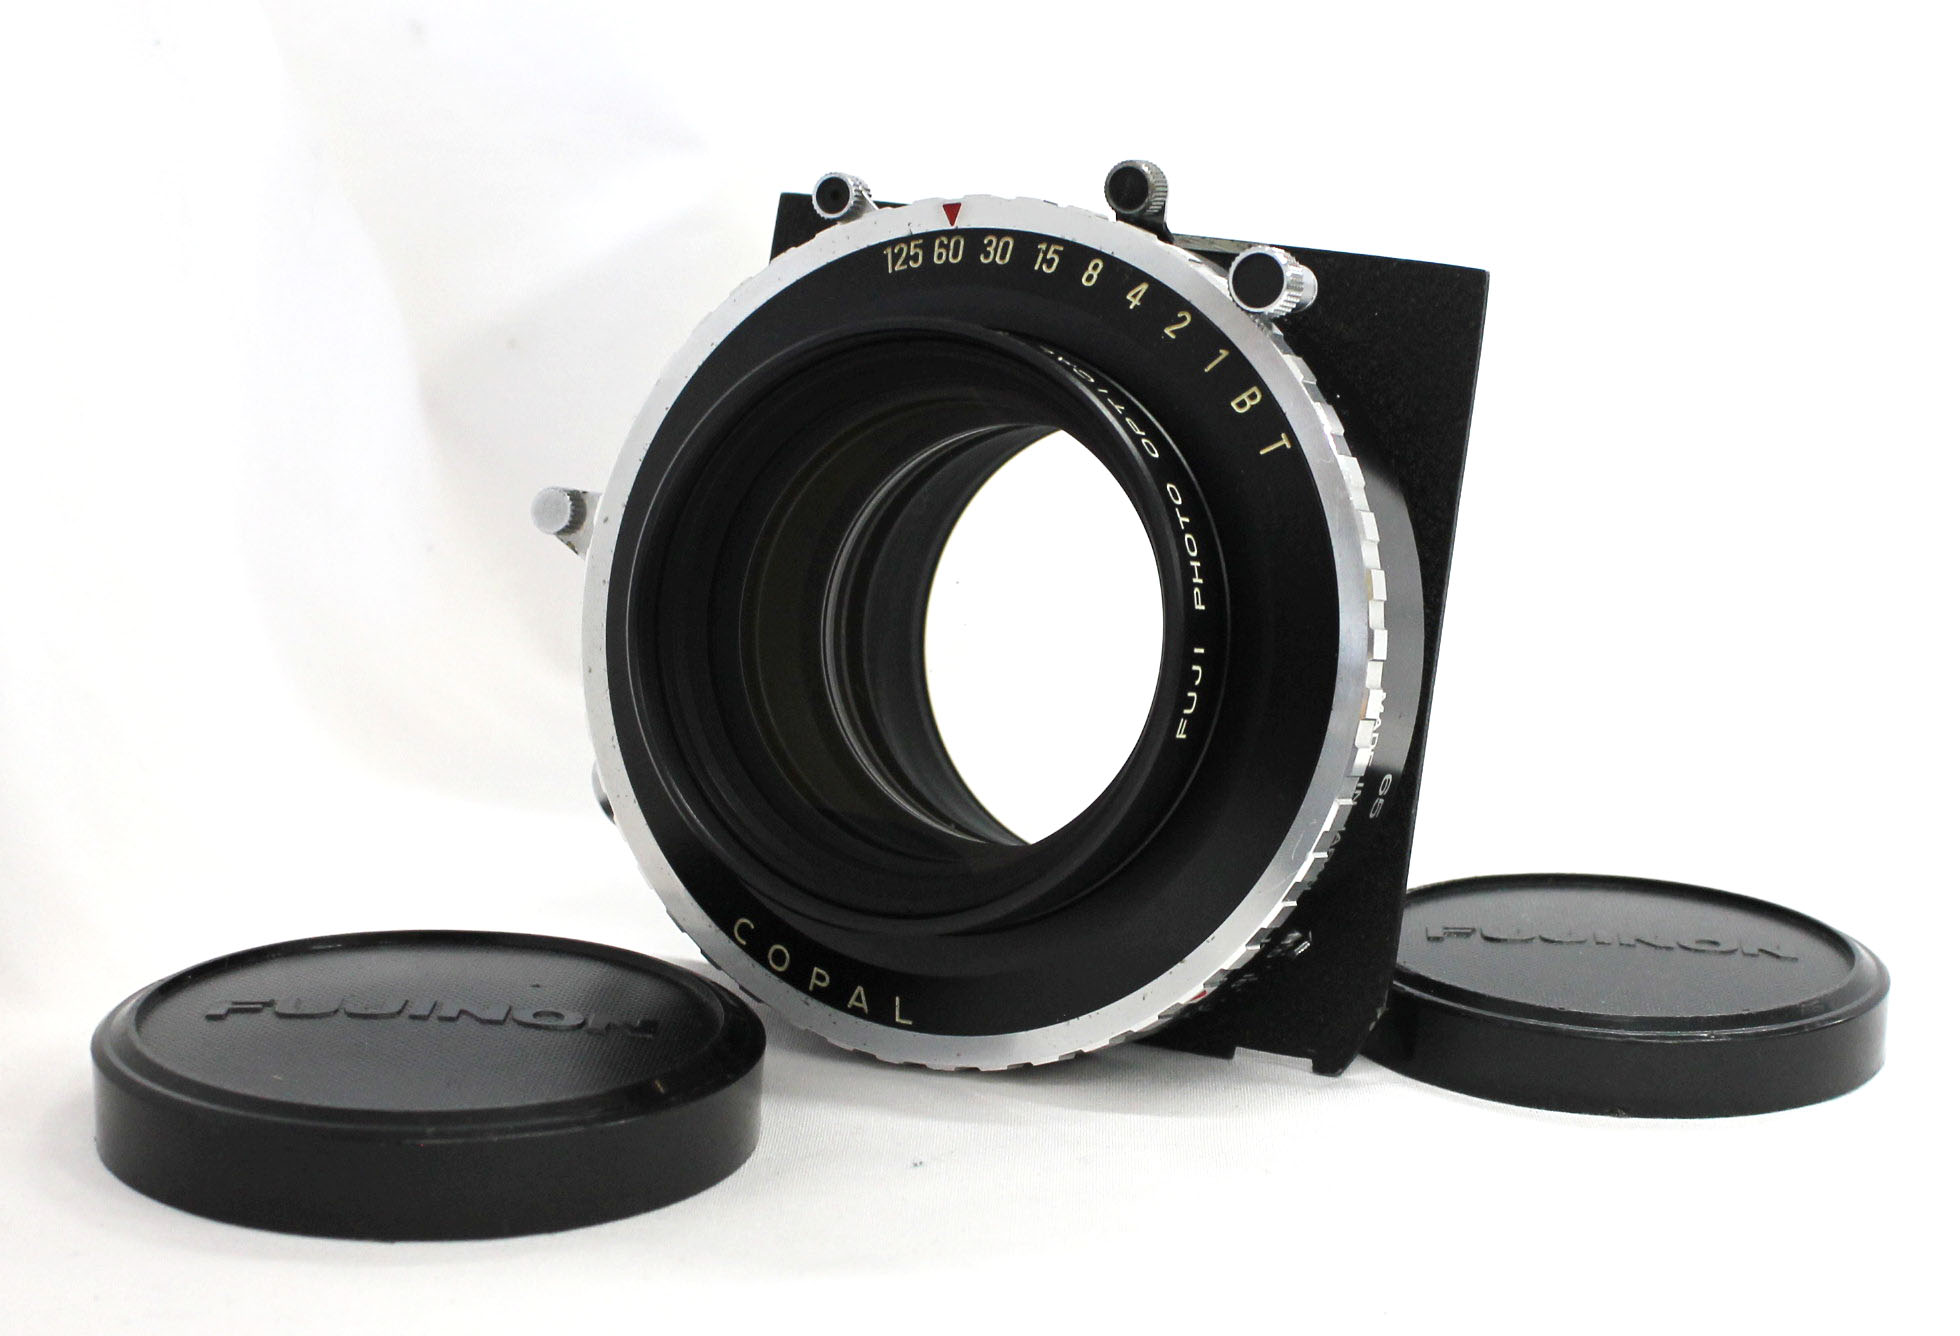  Fuji Fujinon C 600mm F/11.5 4x5 8x10 Large Format Lens Copal No.3 Shutter from Japan Photo 0